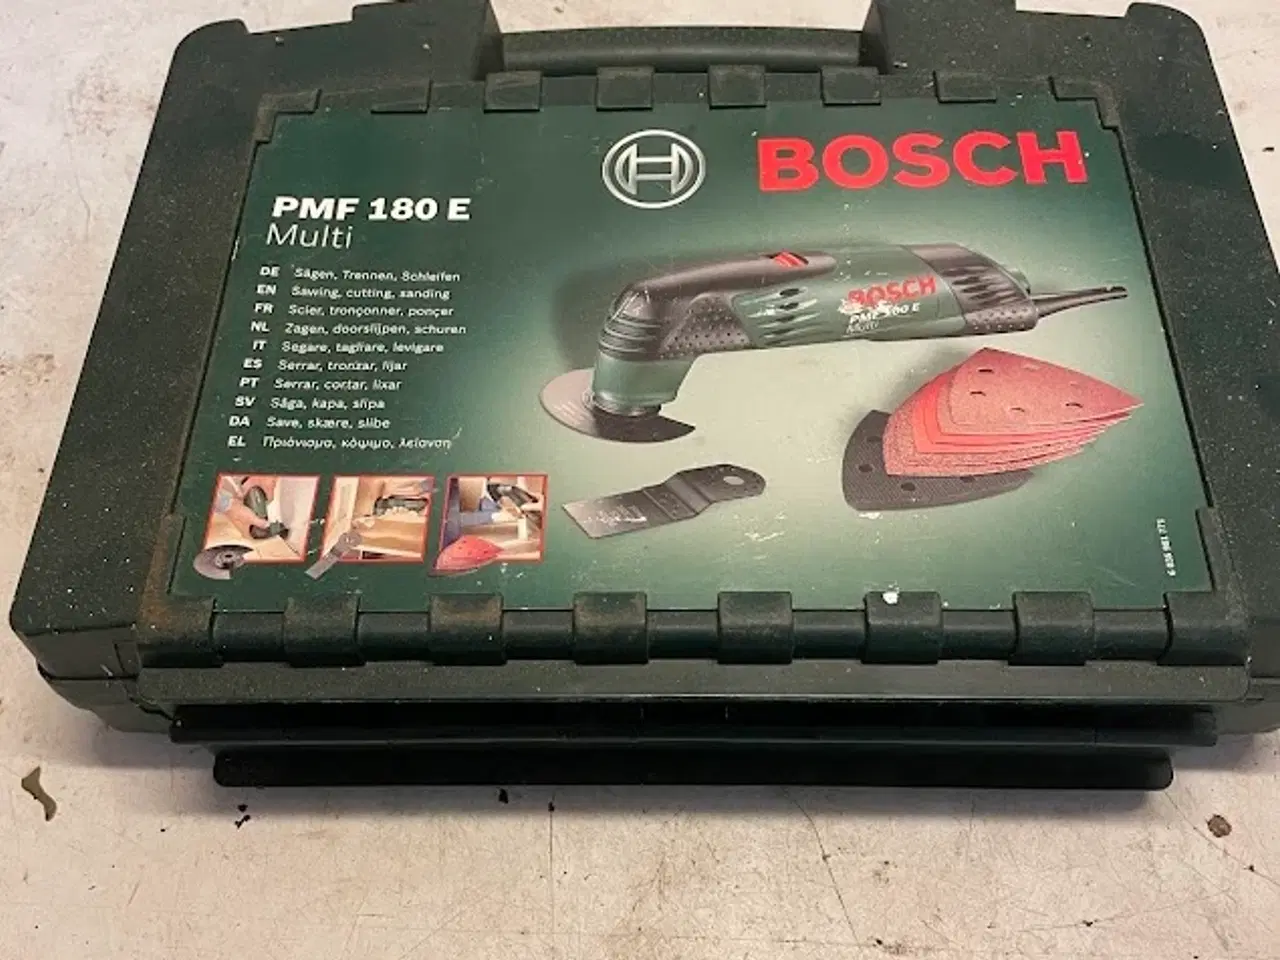 Billede 1 - Bosch multi maskine samt andre håndværket